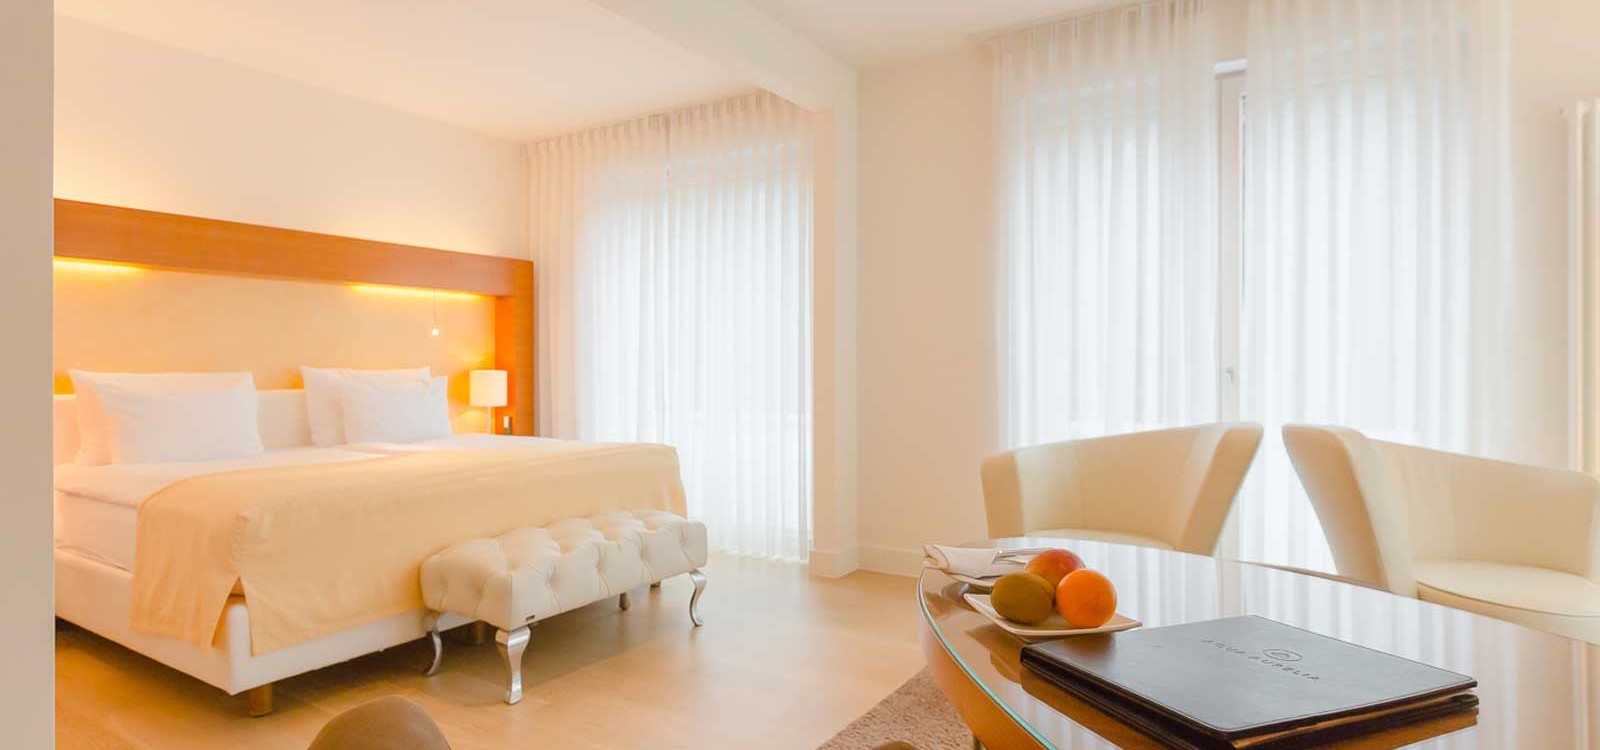 Einblick in eine helle und stilvoll eingerichtete Junior-Suite im Suitenhotel in Baden-Baden